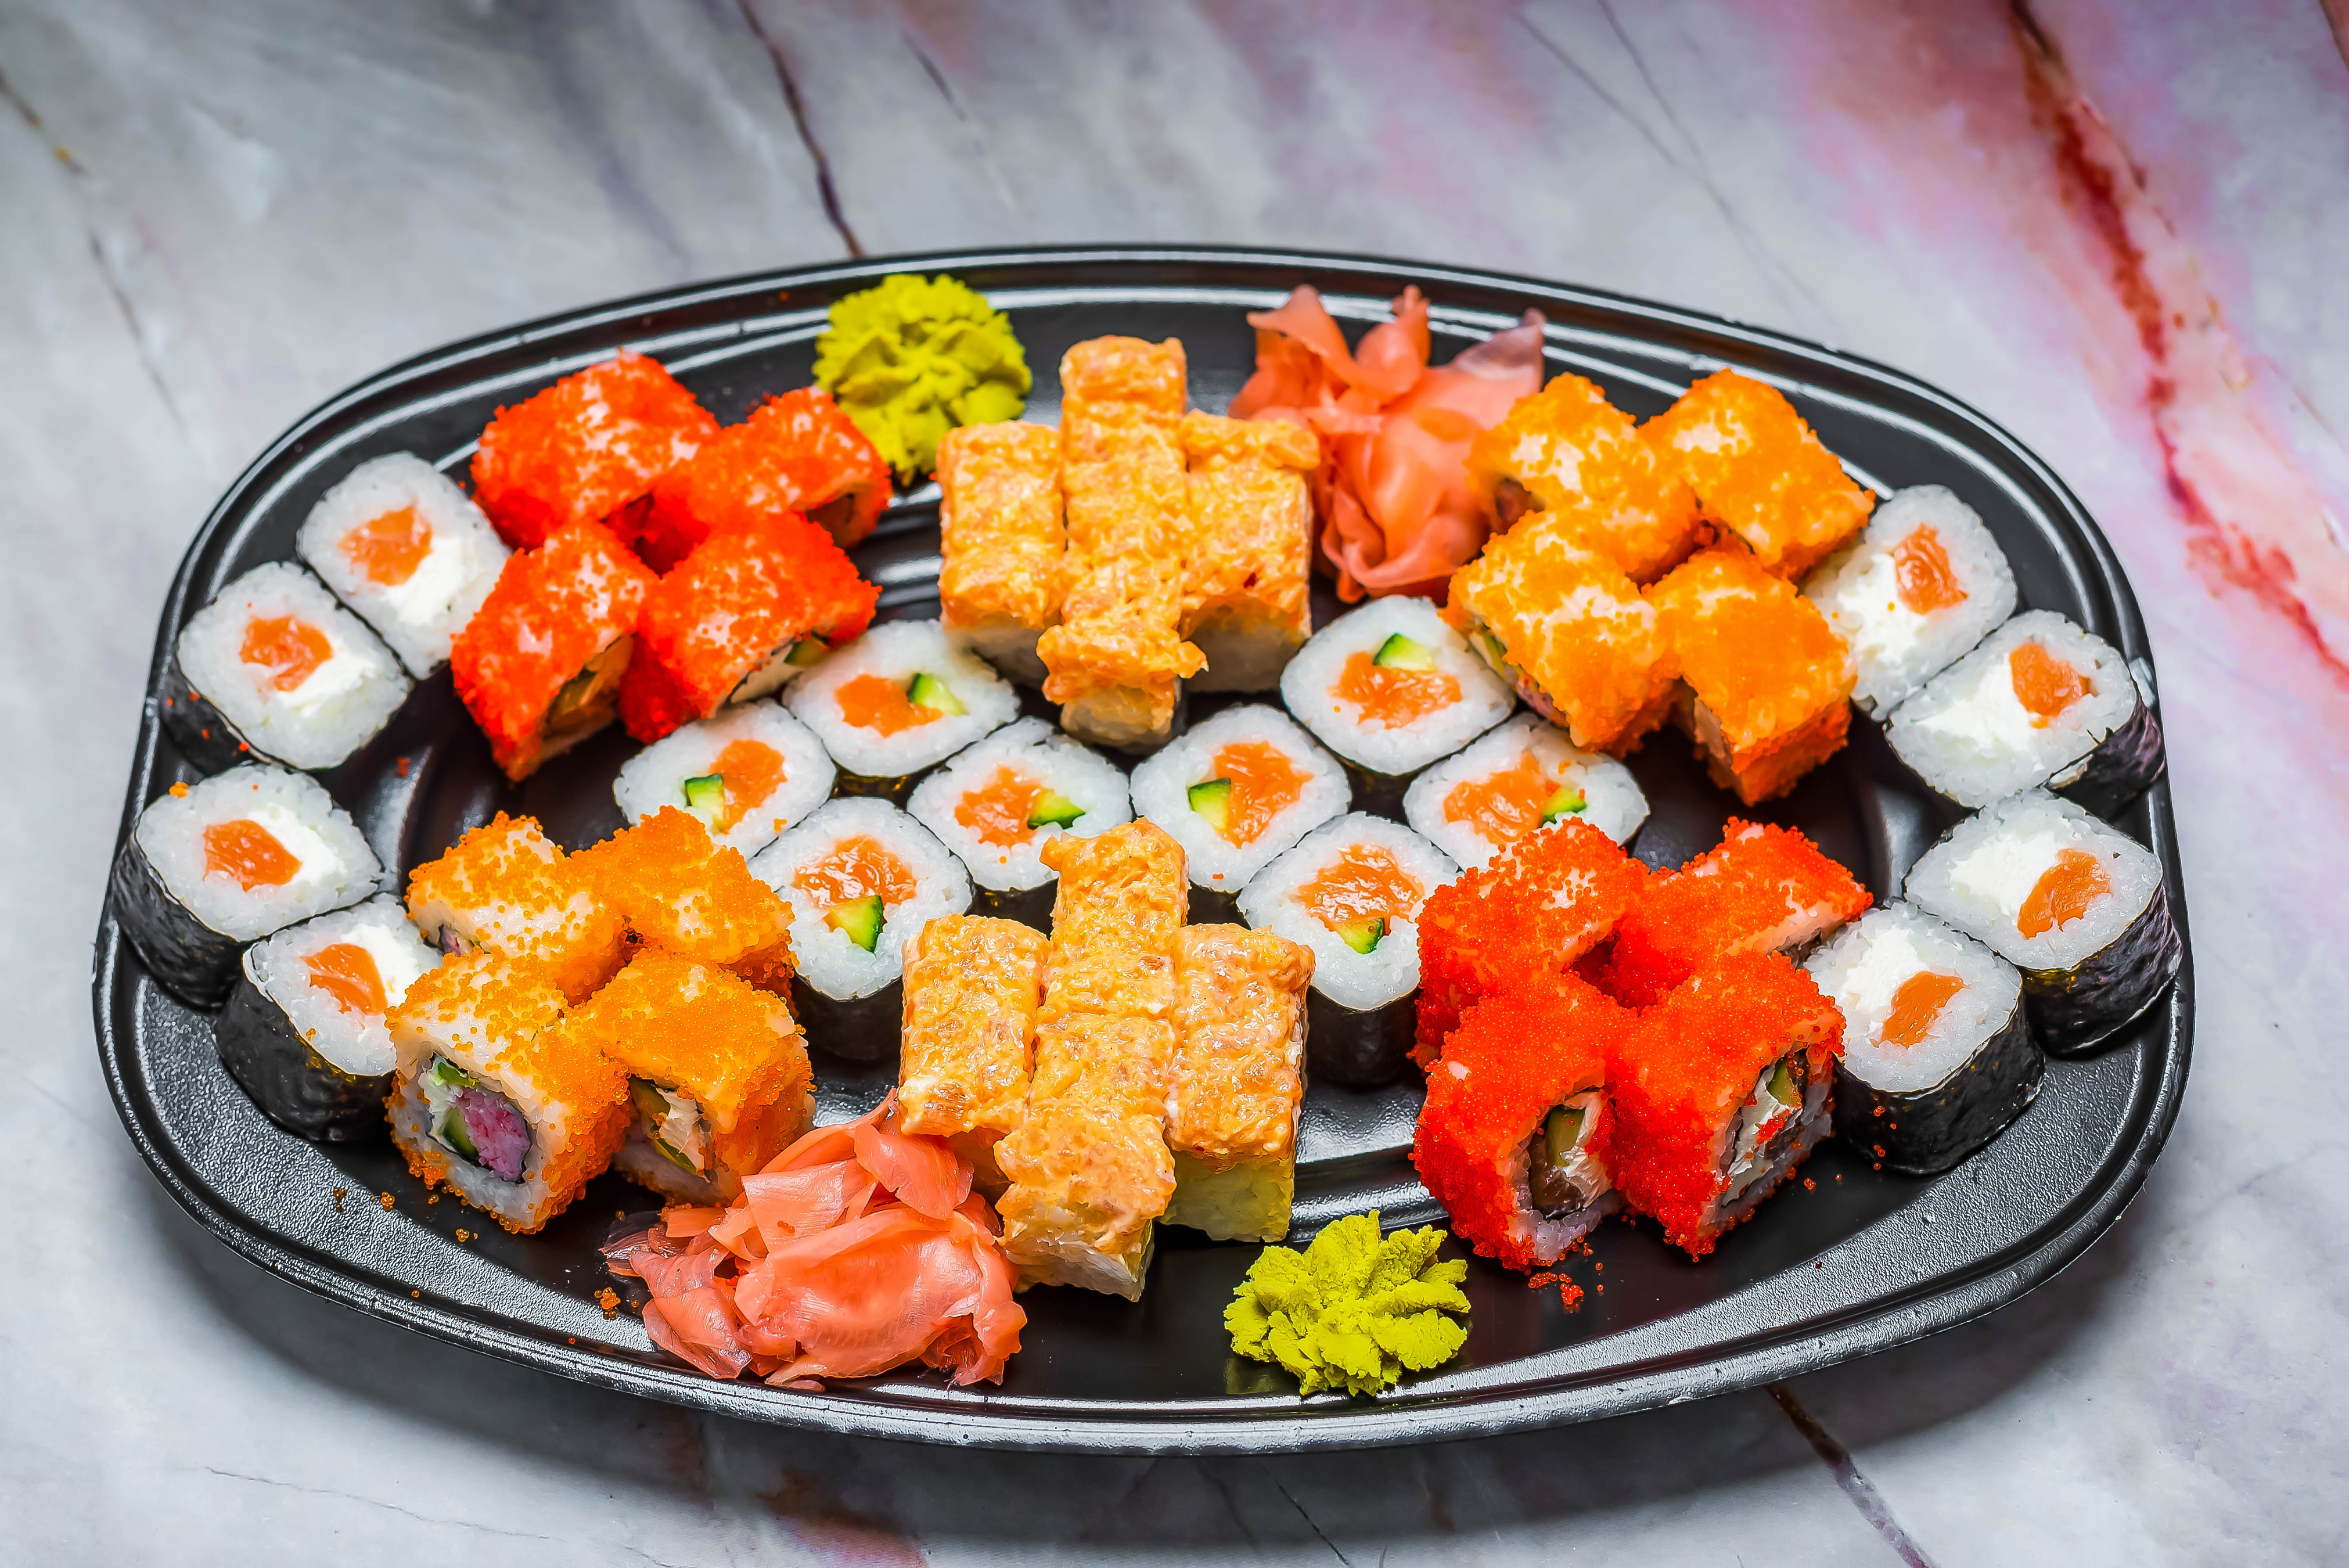 Фотографии Разноцветные Суши Икра Еда Морепродукты 4045x2700 суси Пища Продукты питания